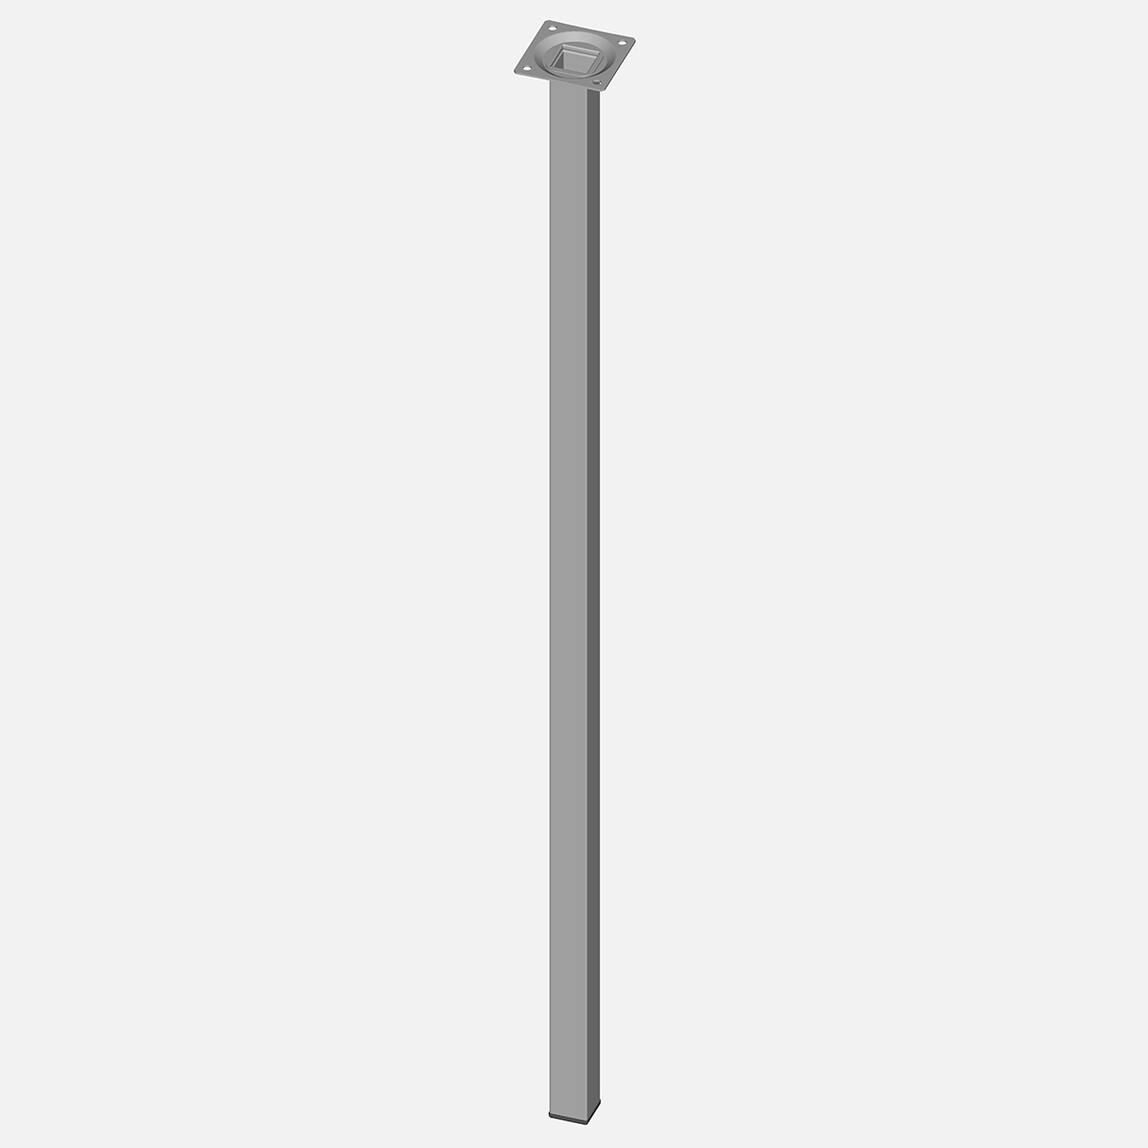    Regalux Masa Ayağı Çelik Boru Kare 800mm Beyaz  